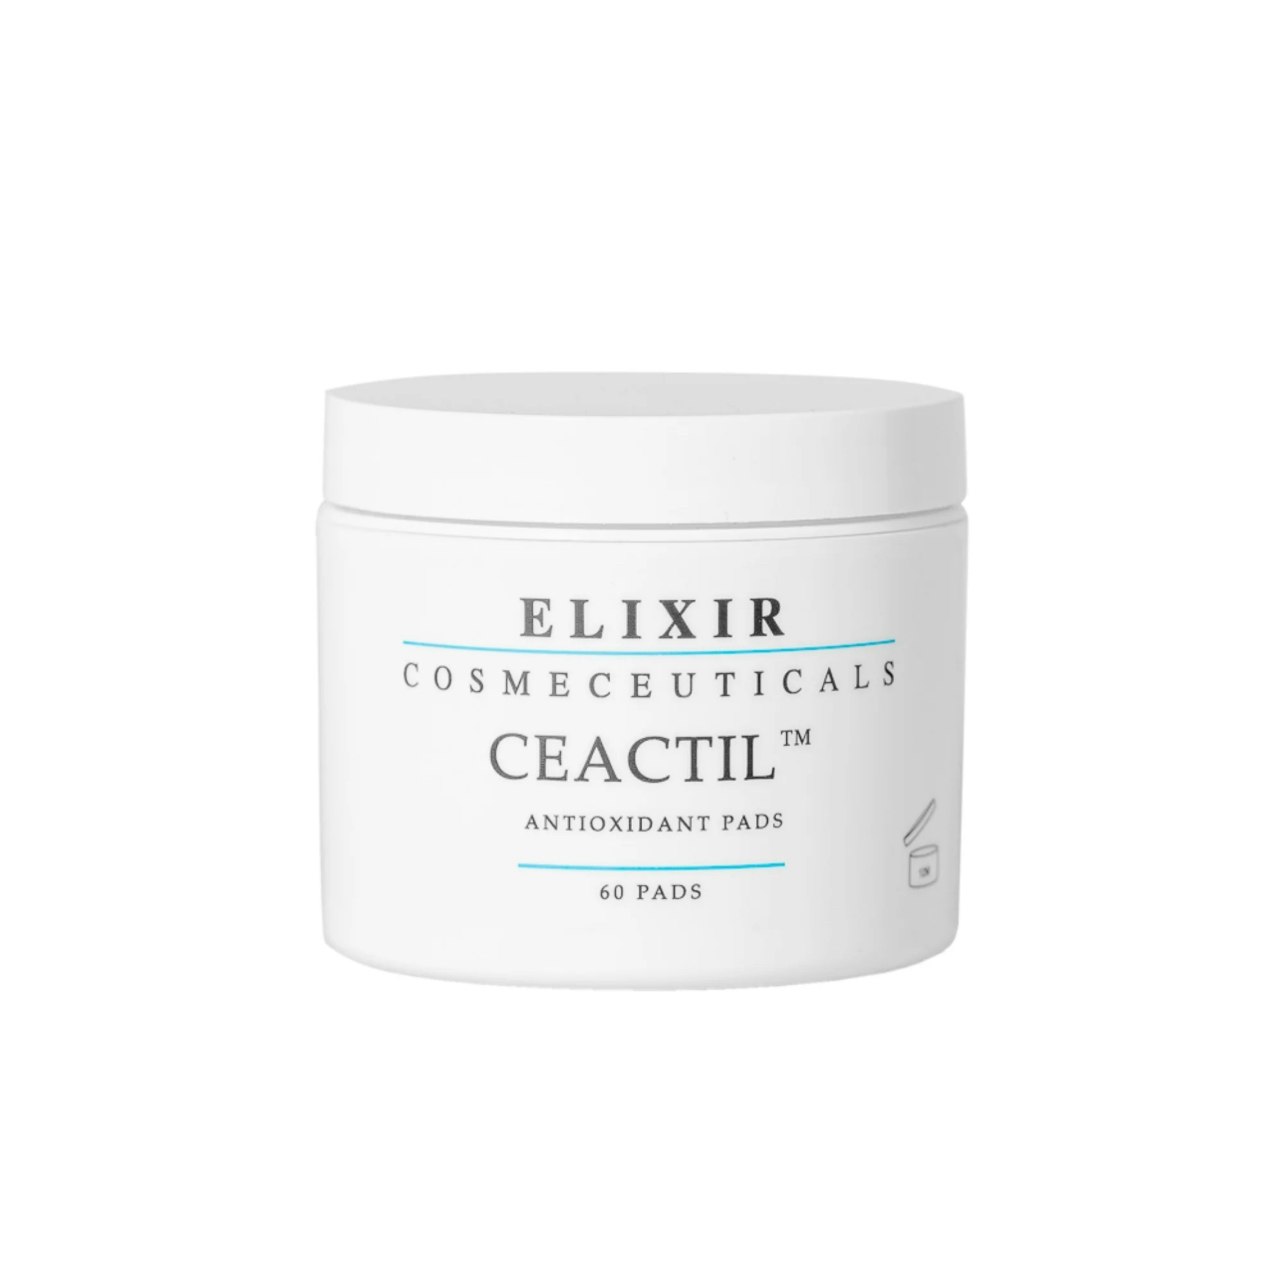 Elixir - Ceactil Antioxidant Pads